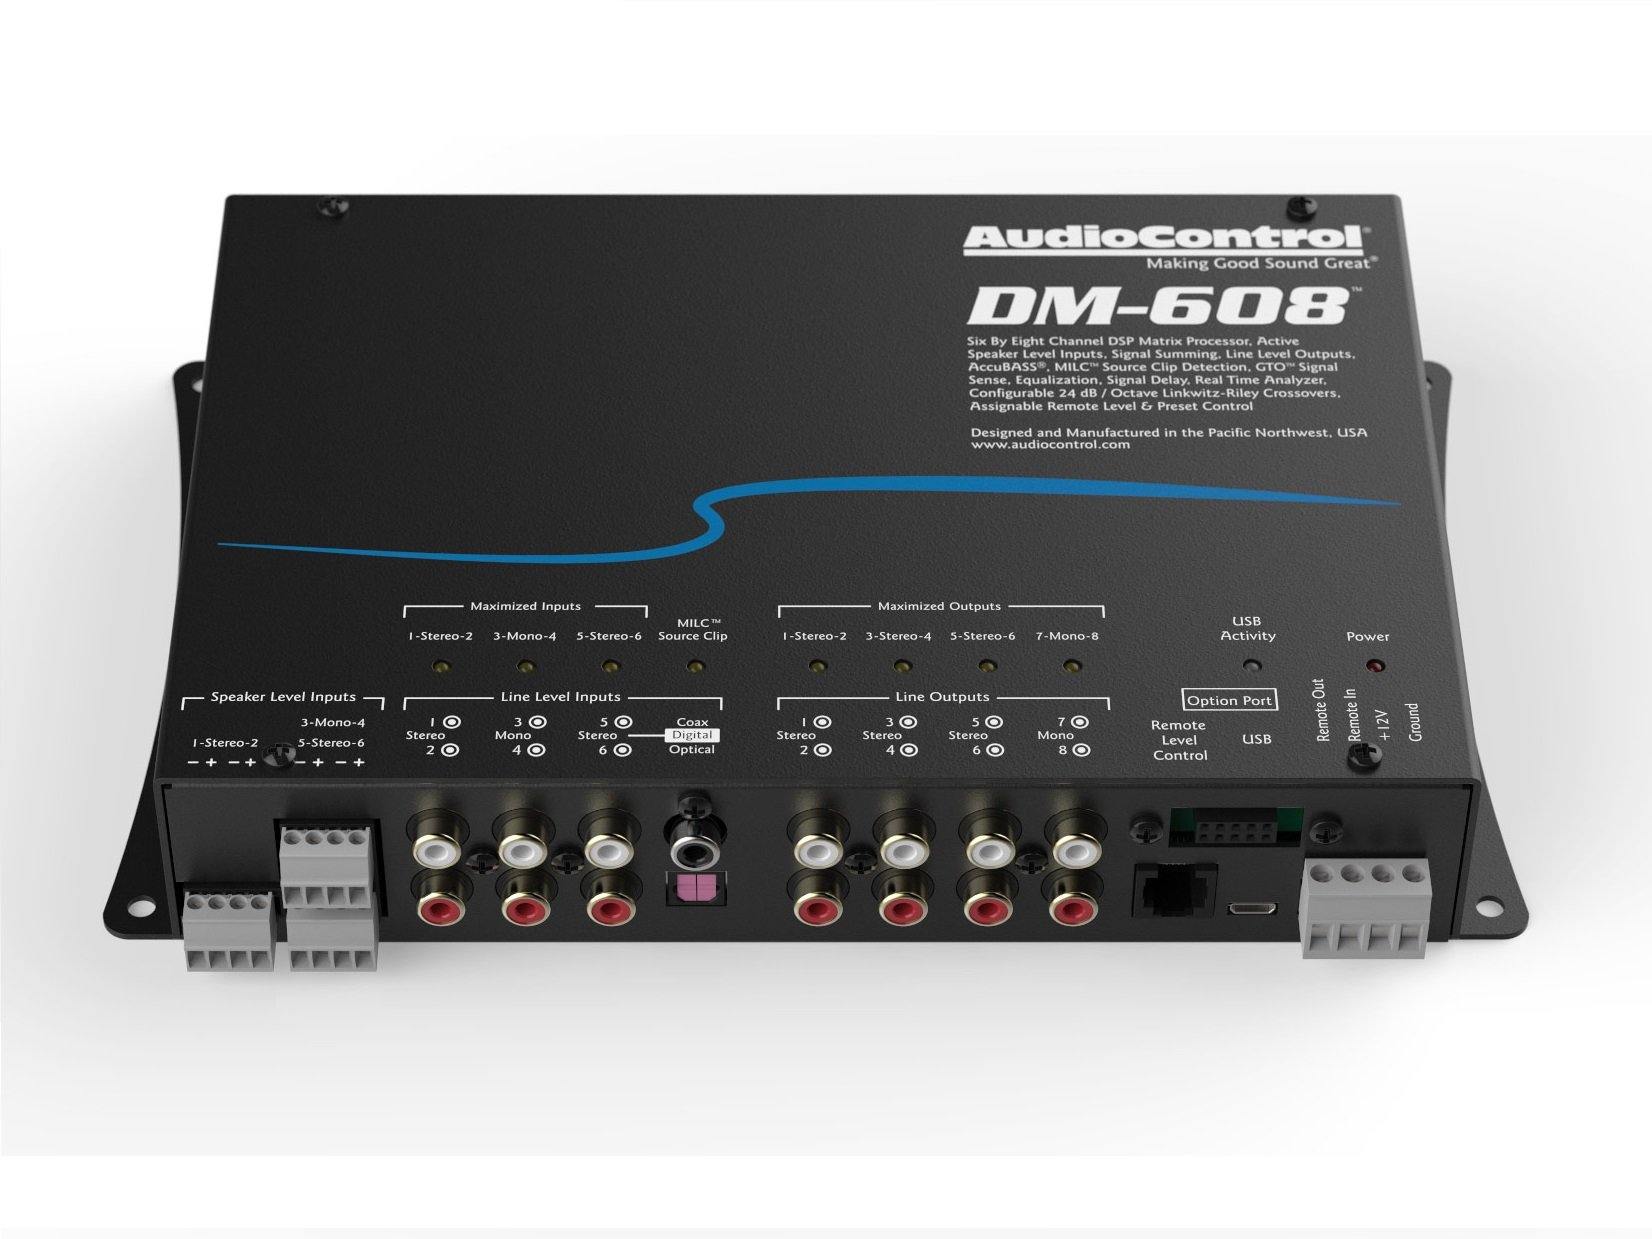 AudioControl DM-608 - DSP Matrix Processor - 3